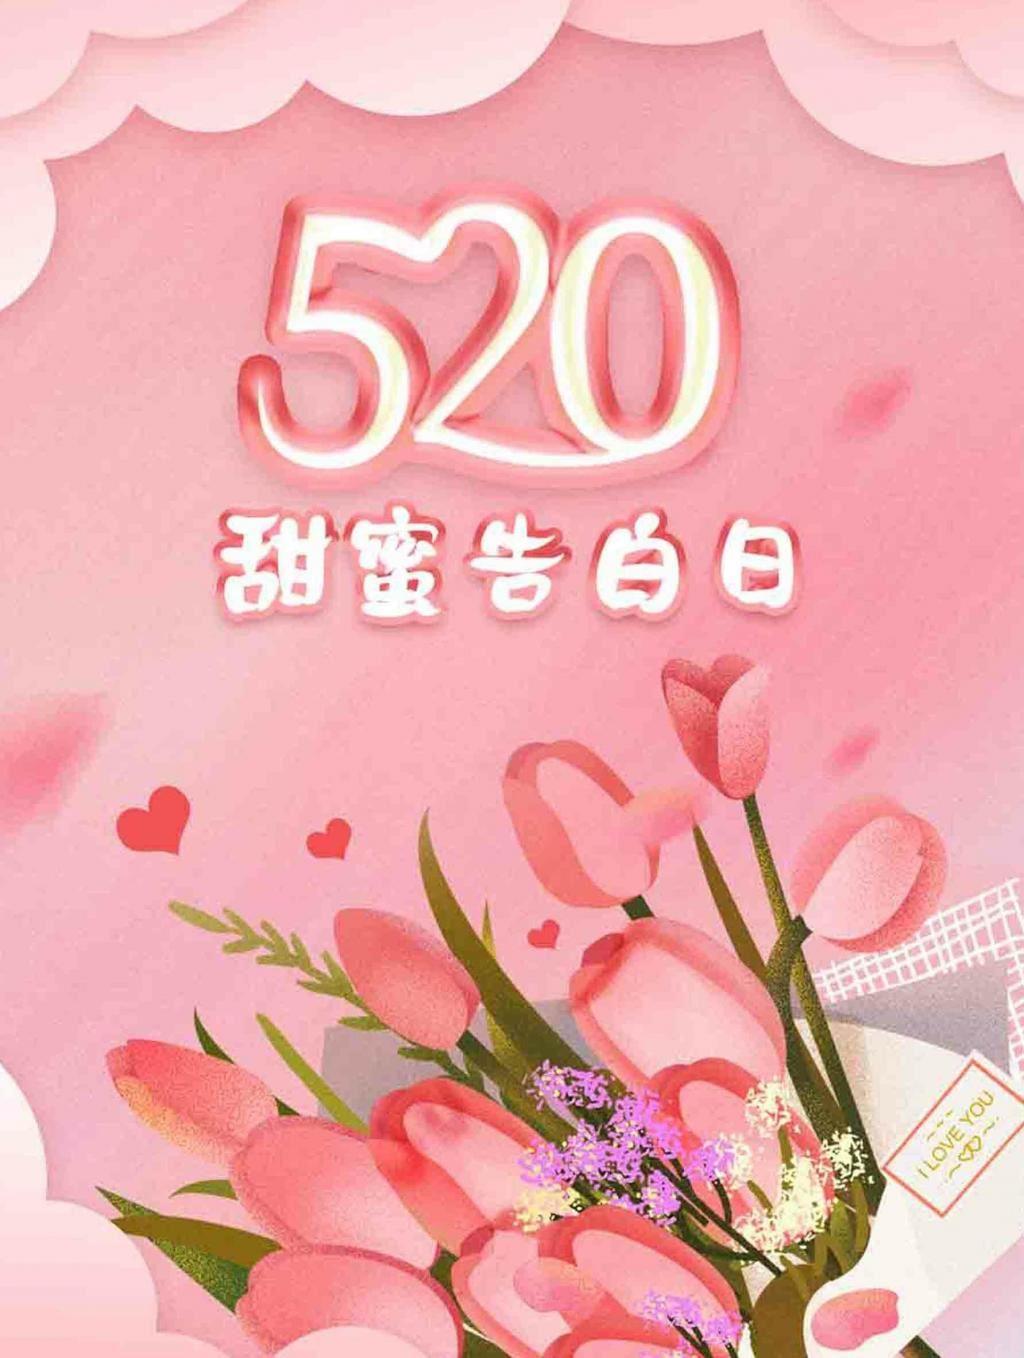 520甜蜜告白日的浪漫粉色背景图片